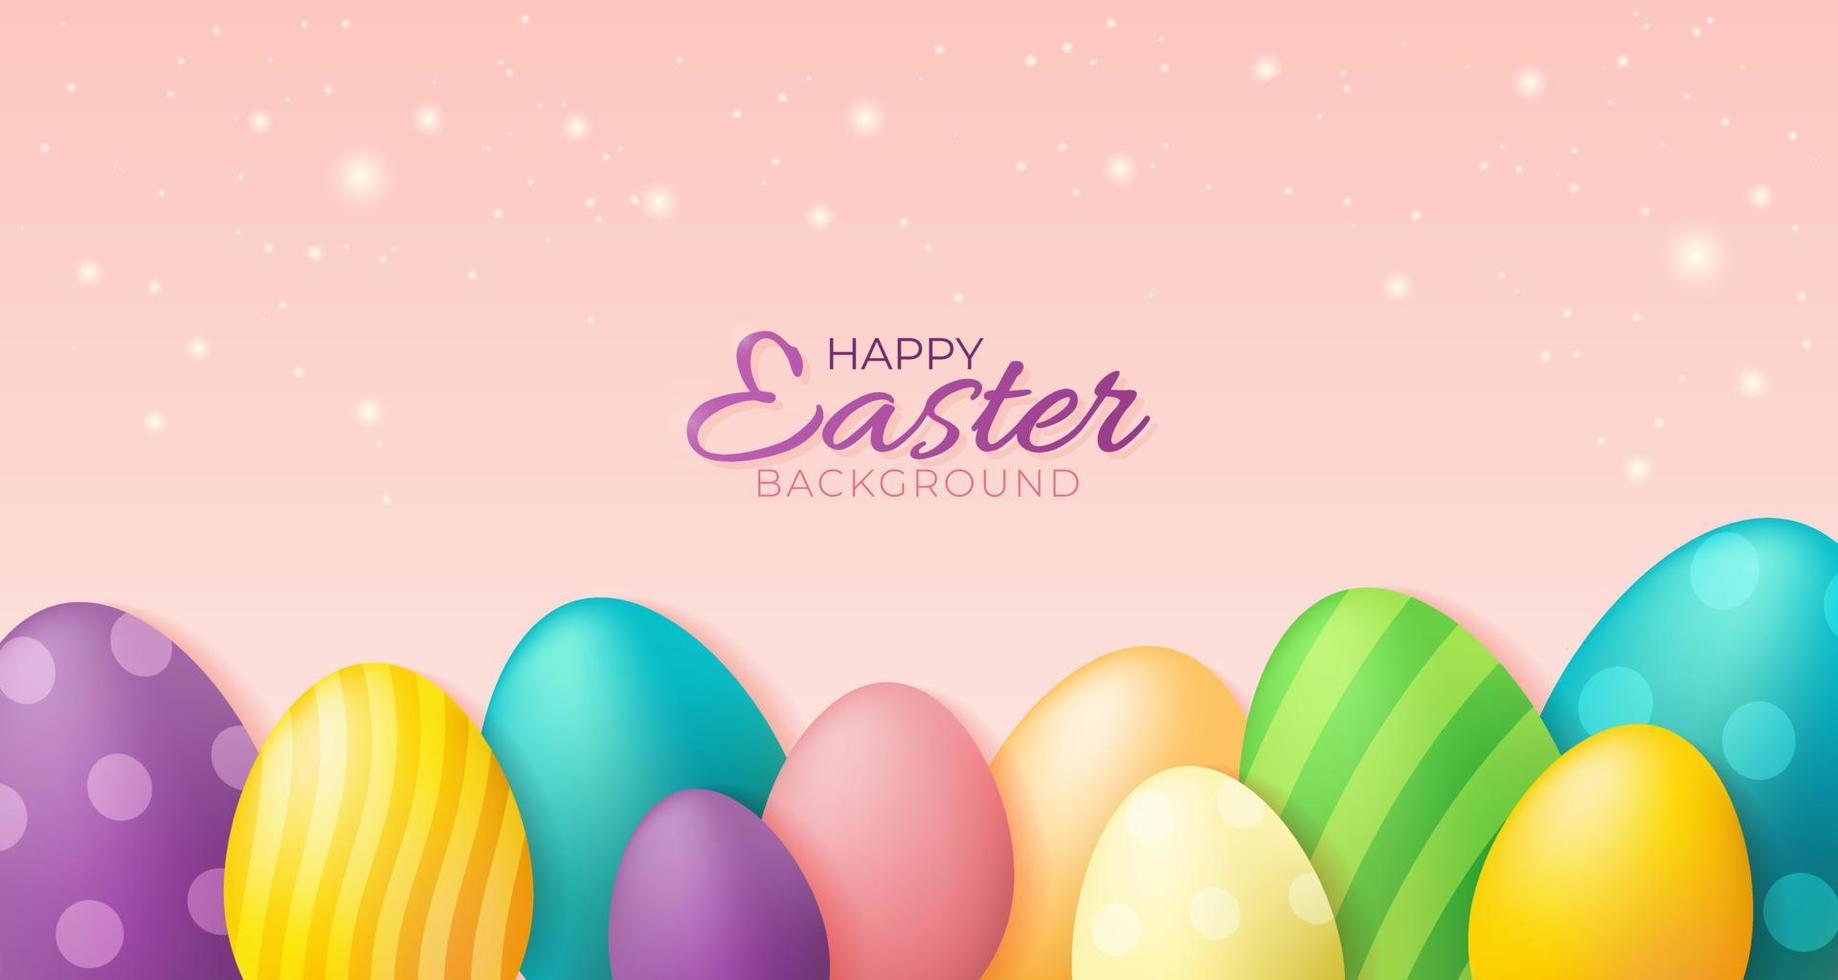 gelukkig Pasen achtergrond met kleurrijk eieren, tekst en fakkels. magisch vector illustratie voor banier, poster, kaart, uitverkoop. voorwerpen zijn gelaagd.